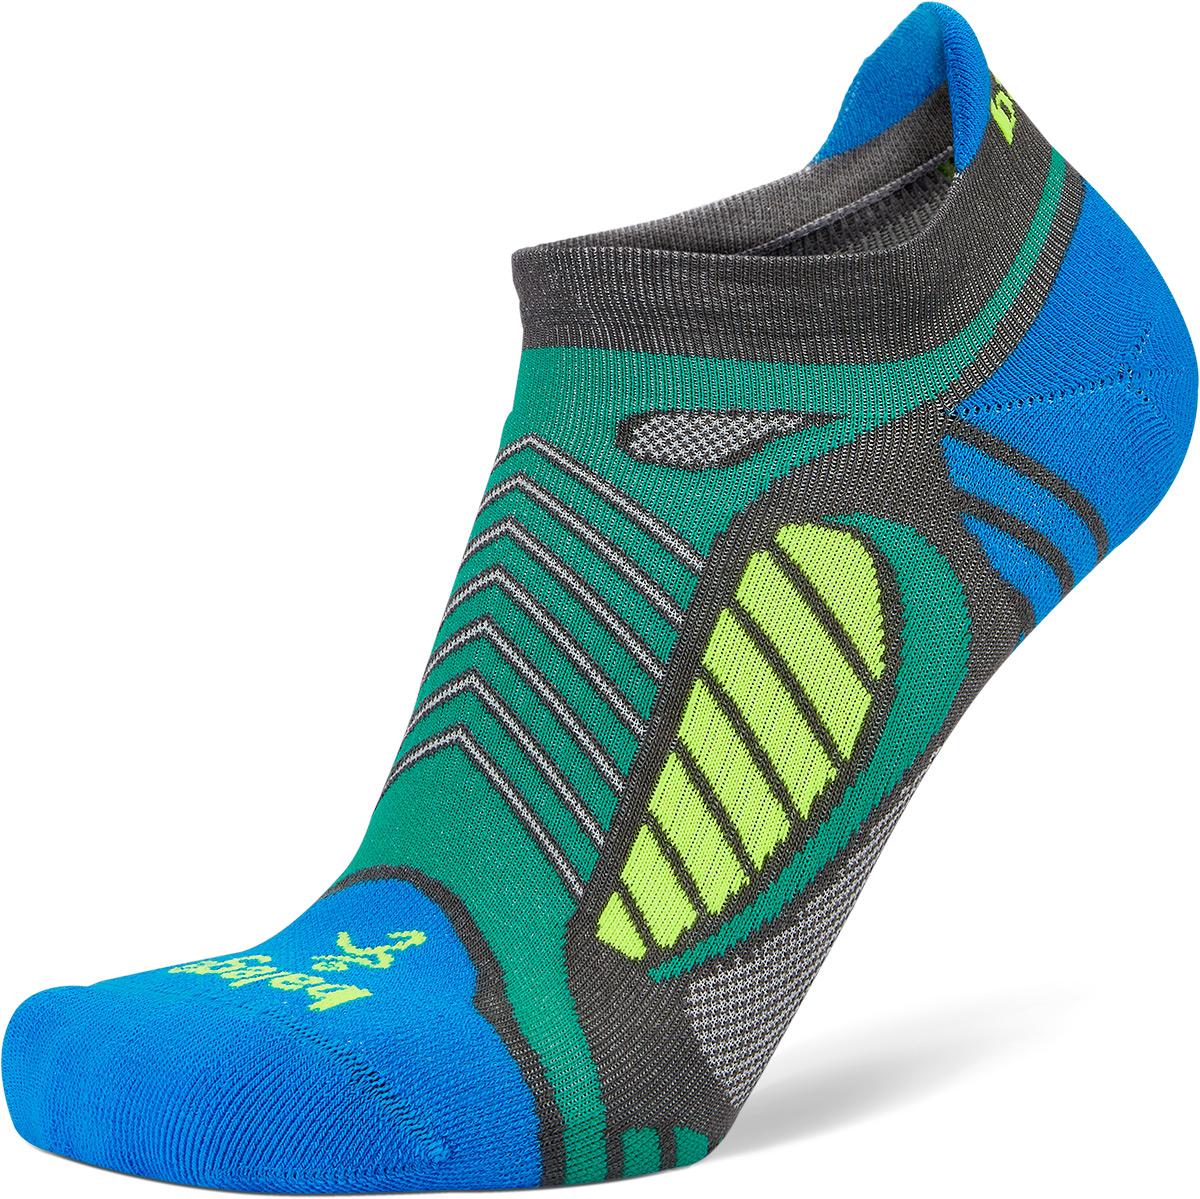 Balega Ultra Lite 22 Socks - Light Grey/bright Turquoise